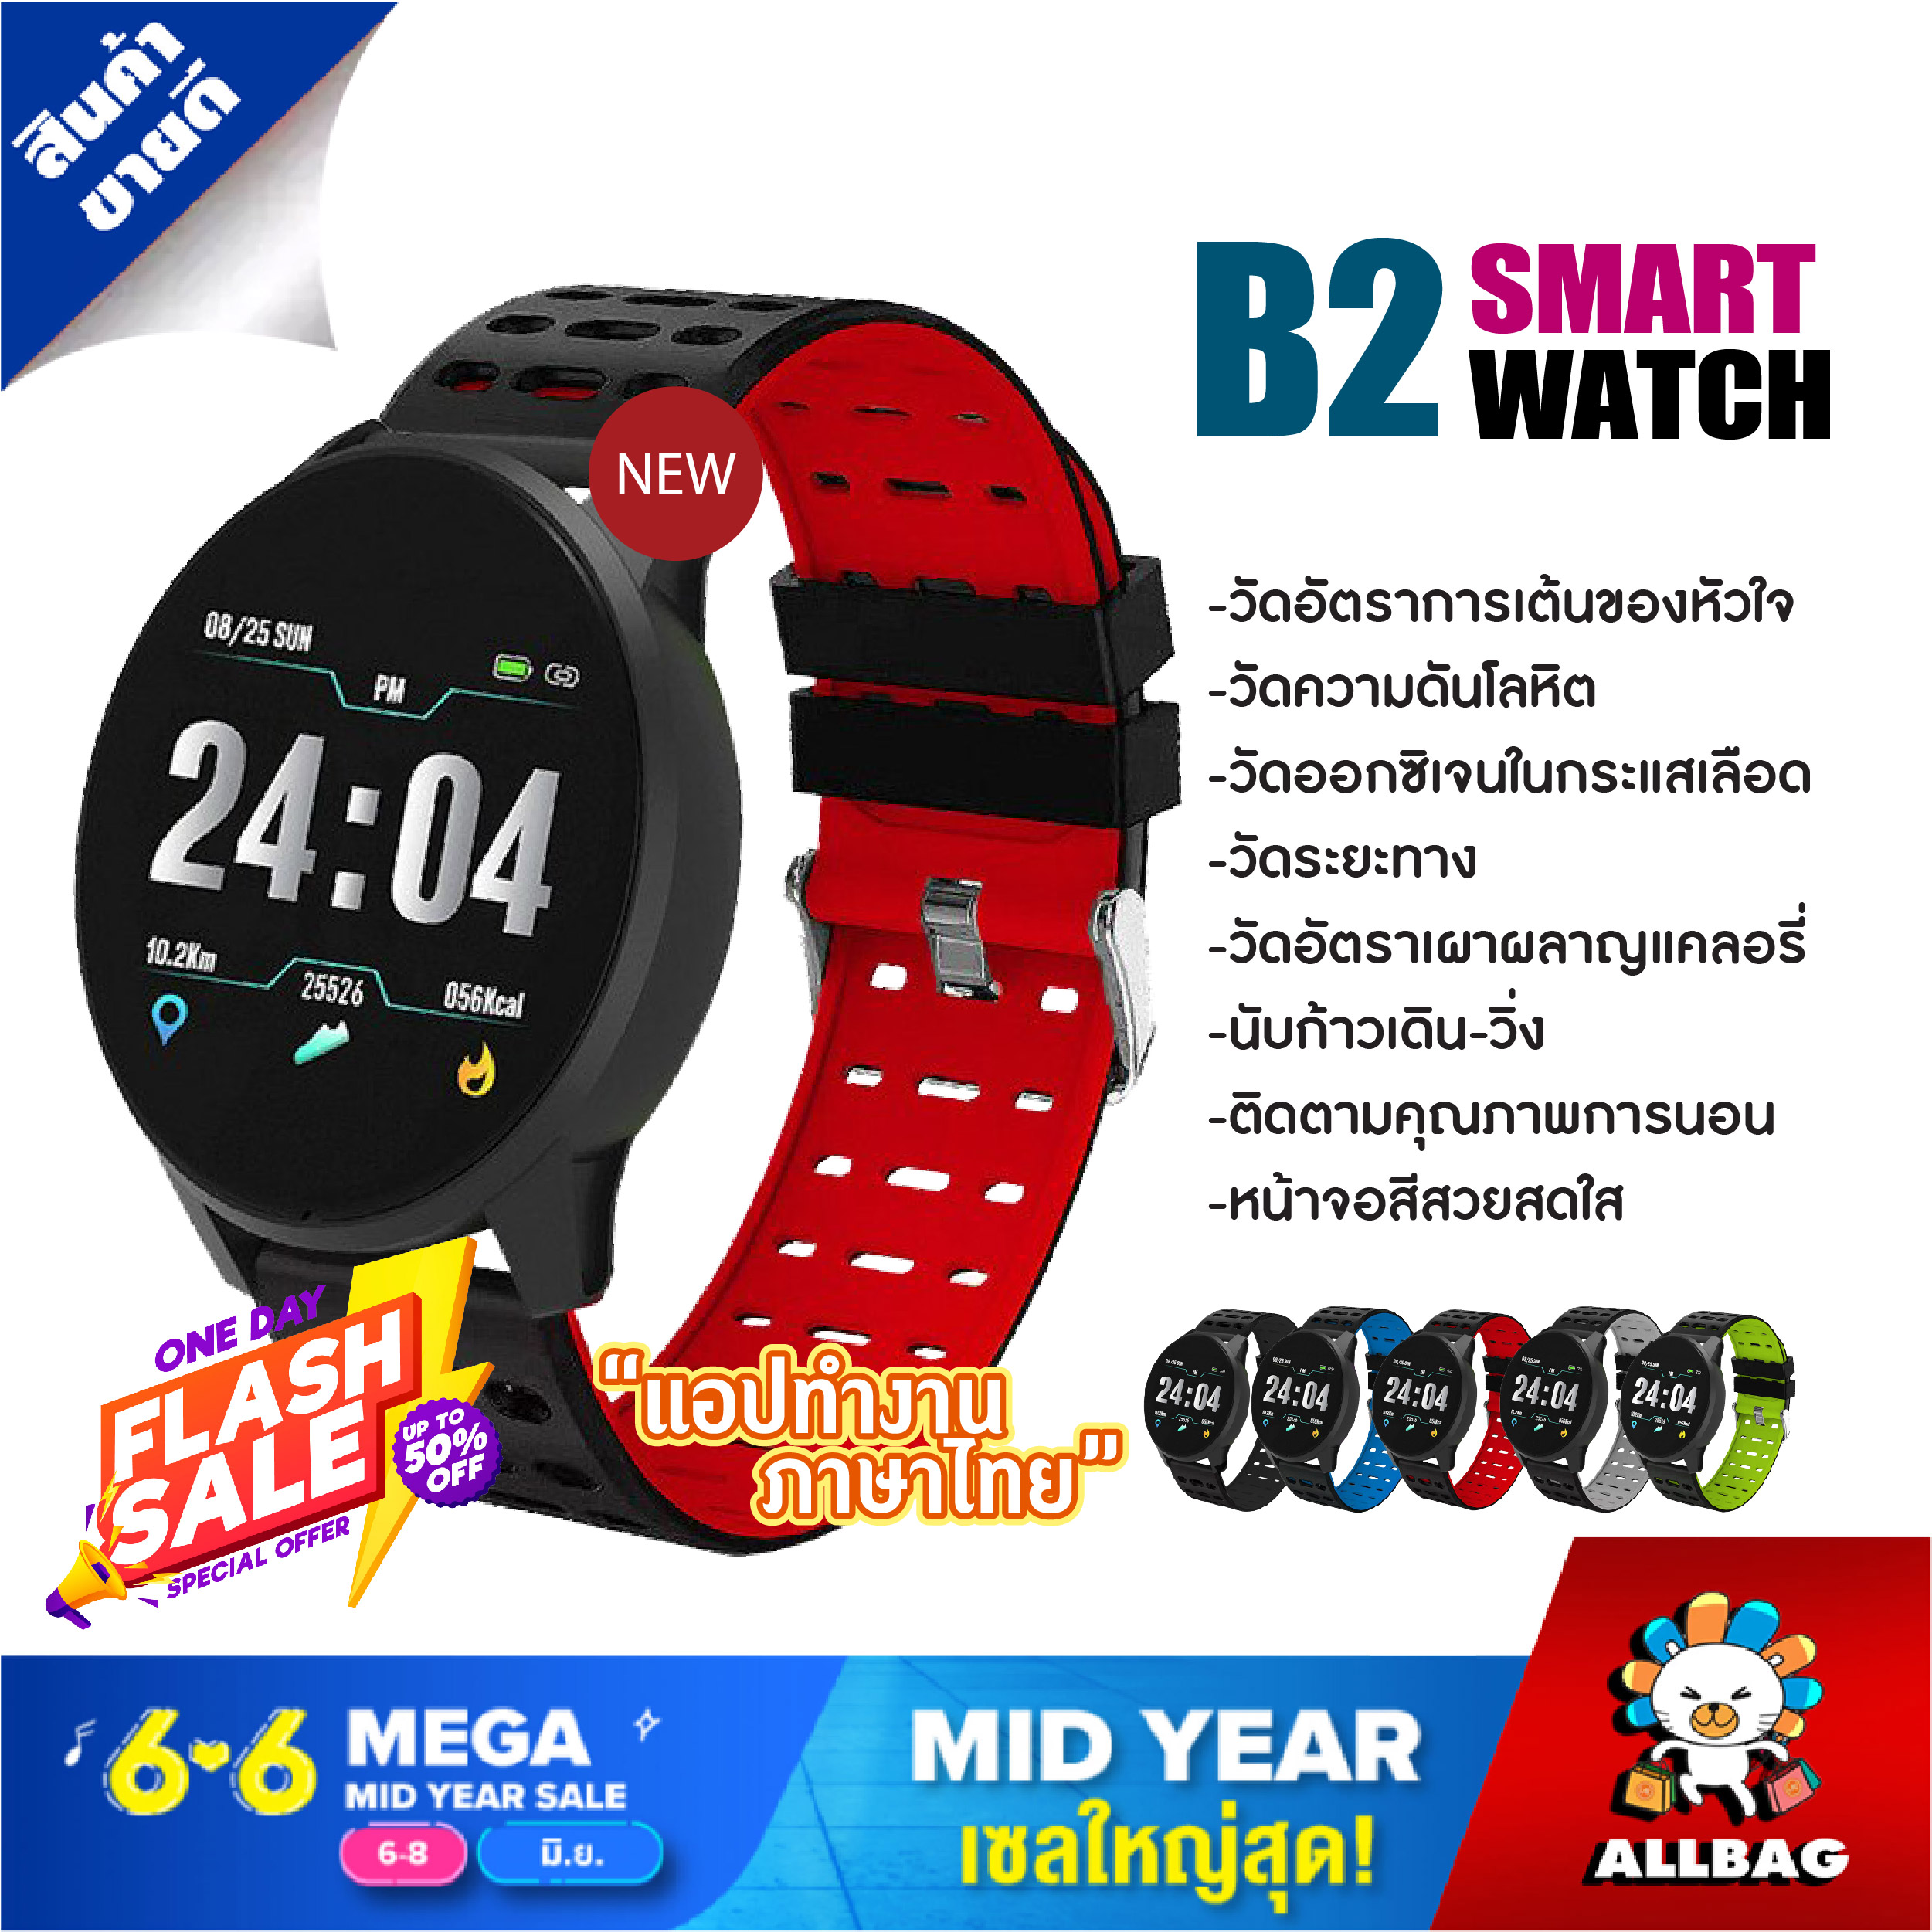 Allbag สมาร์ทวอชท์ สมาทวอช SmartWatch นาฬิกาอัจฉริยะ Smart Watch B2 สมาร์ทวอทช์ รองรับภาษาไทย  นาฬิกา ดิจิตอล ใช้ได้ทั้ง Android และ IOS